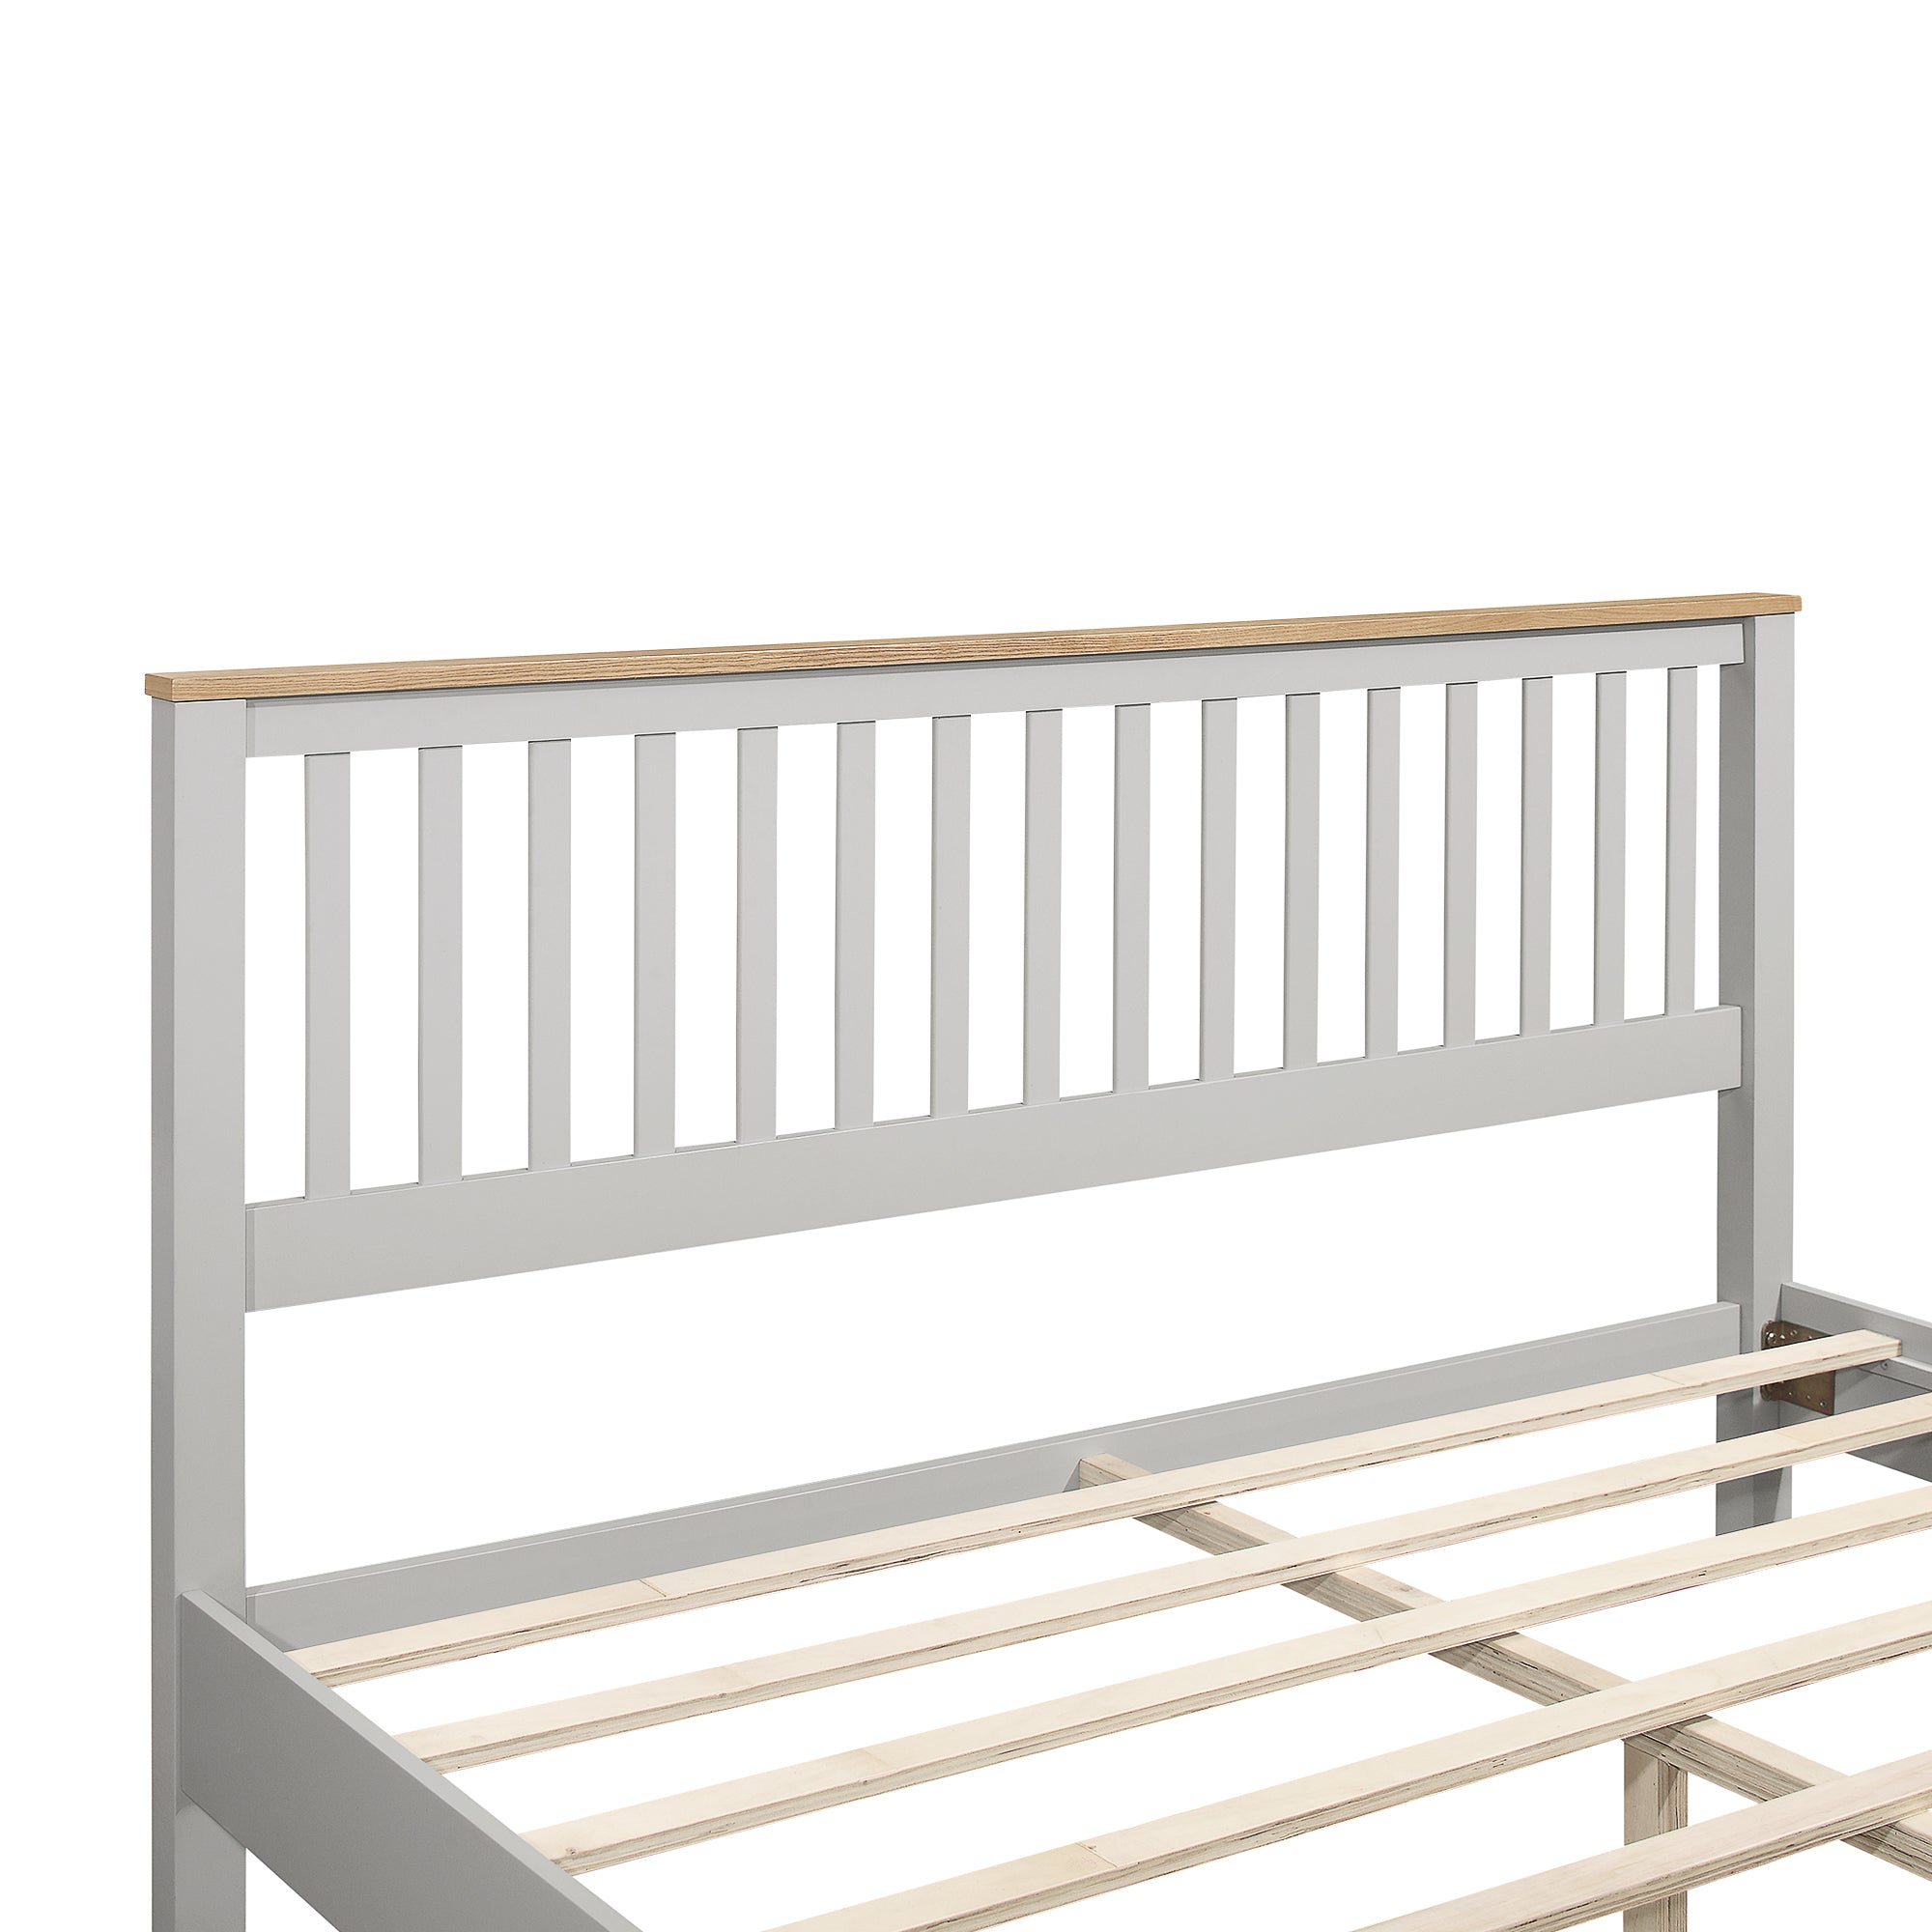 King Size Grey Platform Bed Frame with Oak Top By: Alabama Beds